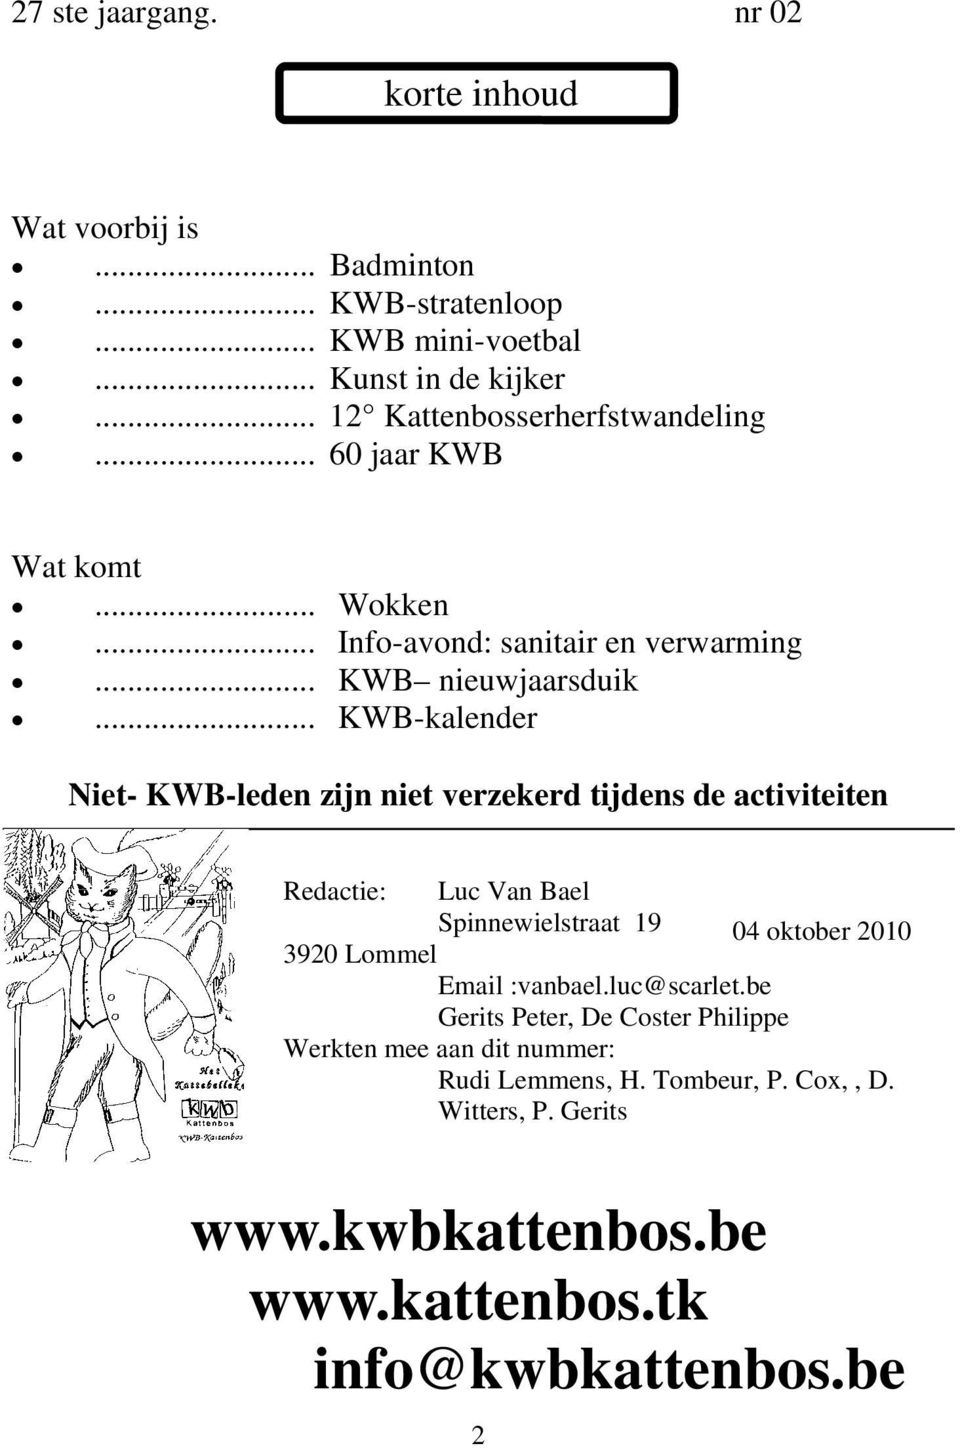 .. KWB-kalender Niet- KWB-leden zijn niet verzekerd tijdens de activiteiten Redactie: Luc Van Bael Spinnewielstraat 19 04 oktober 2010 3920 Lommel